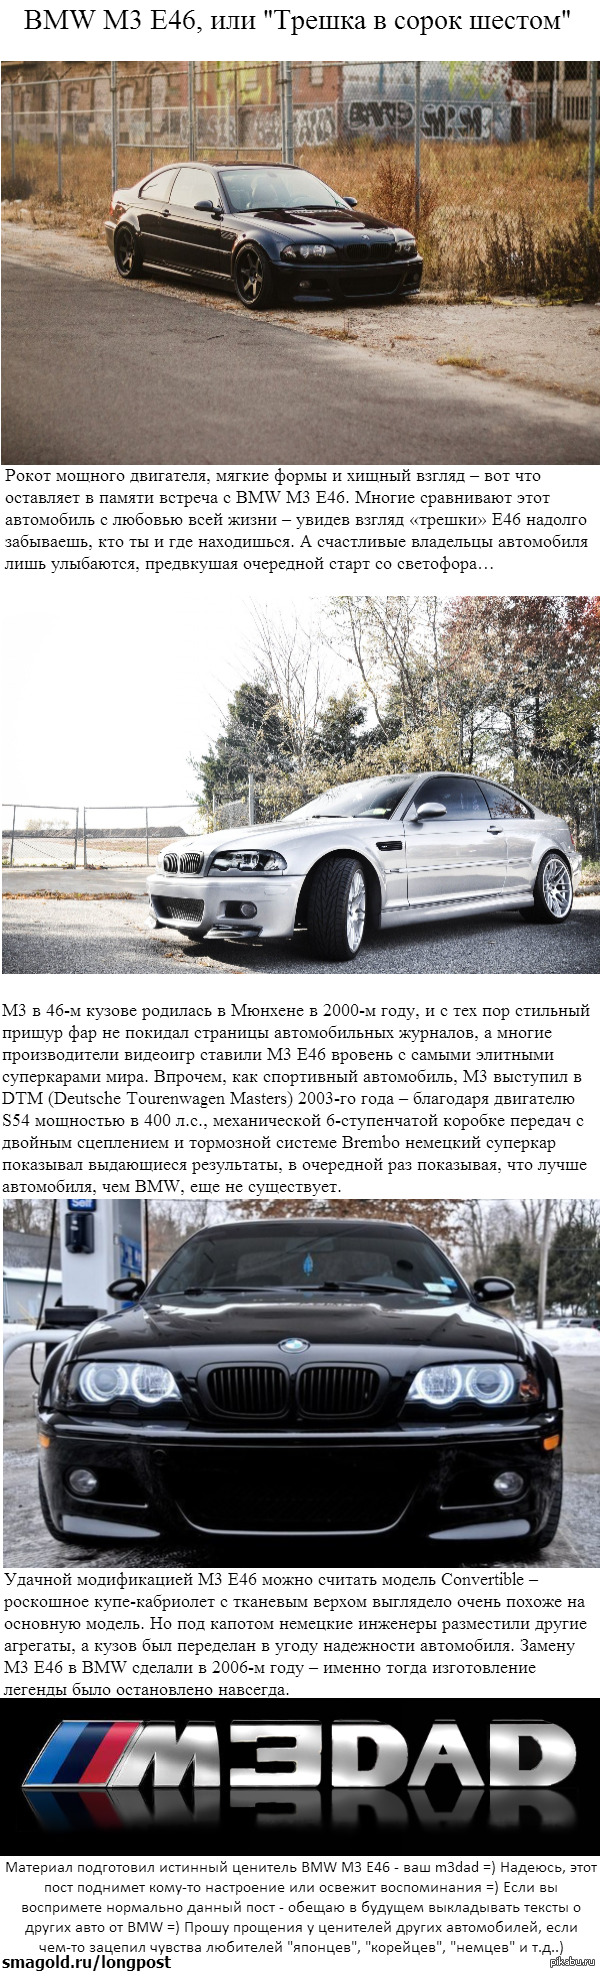 (= BMW M3 E46 =) 